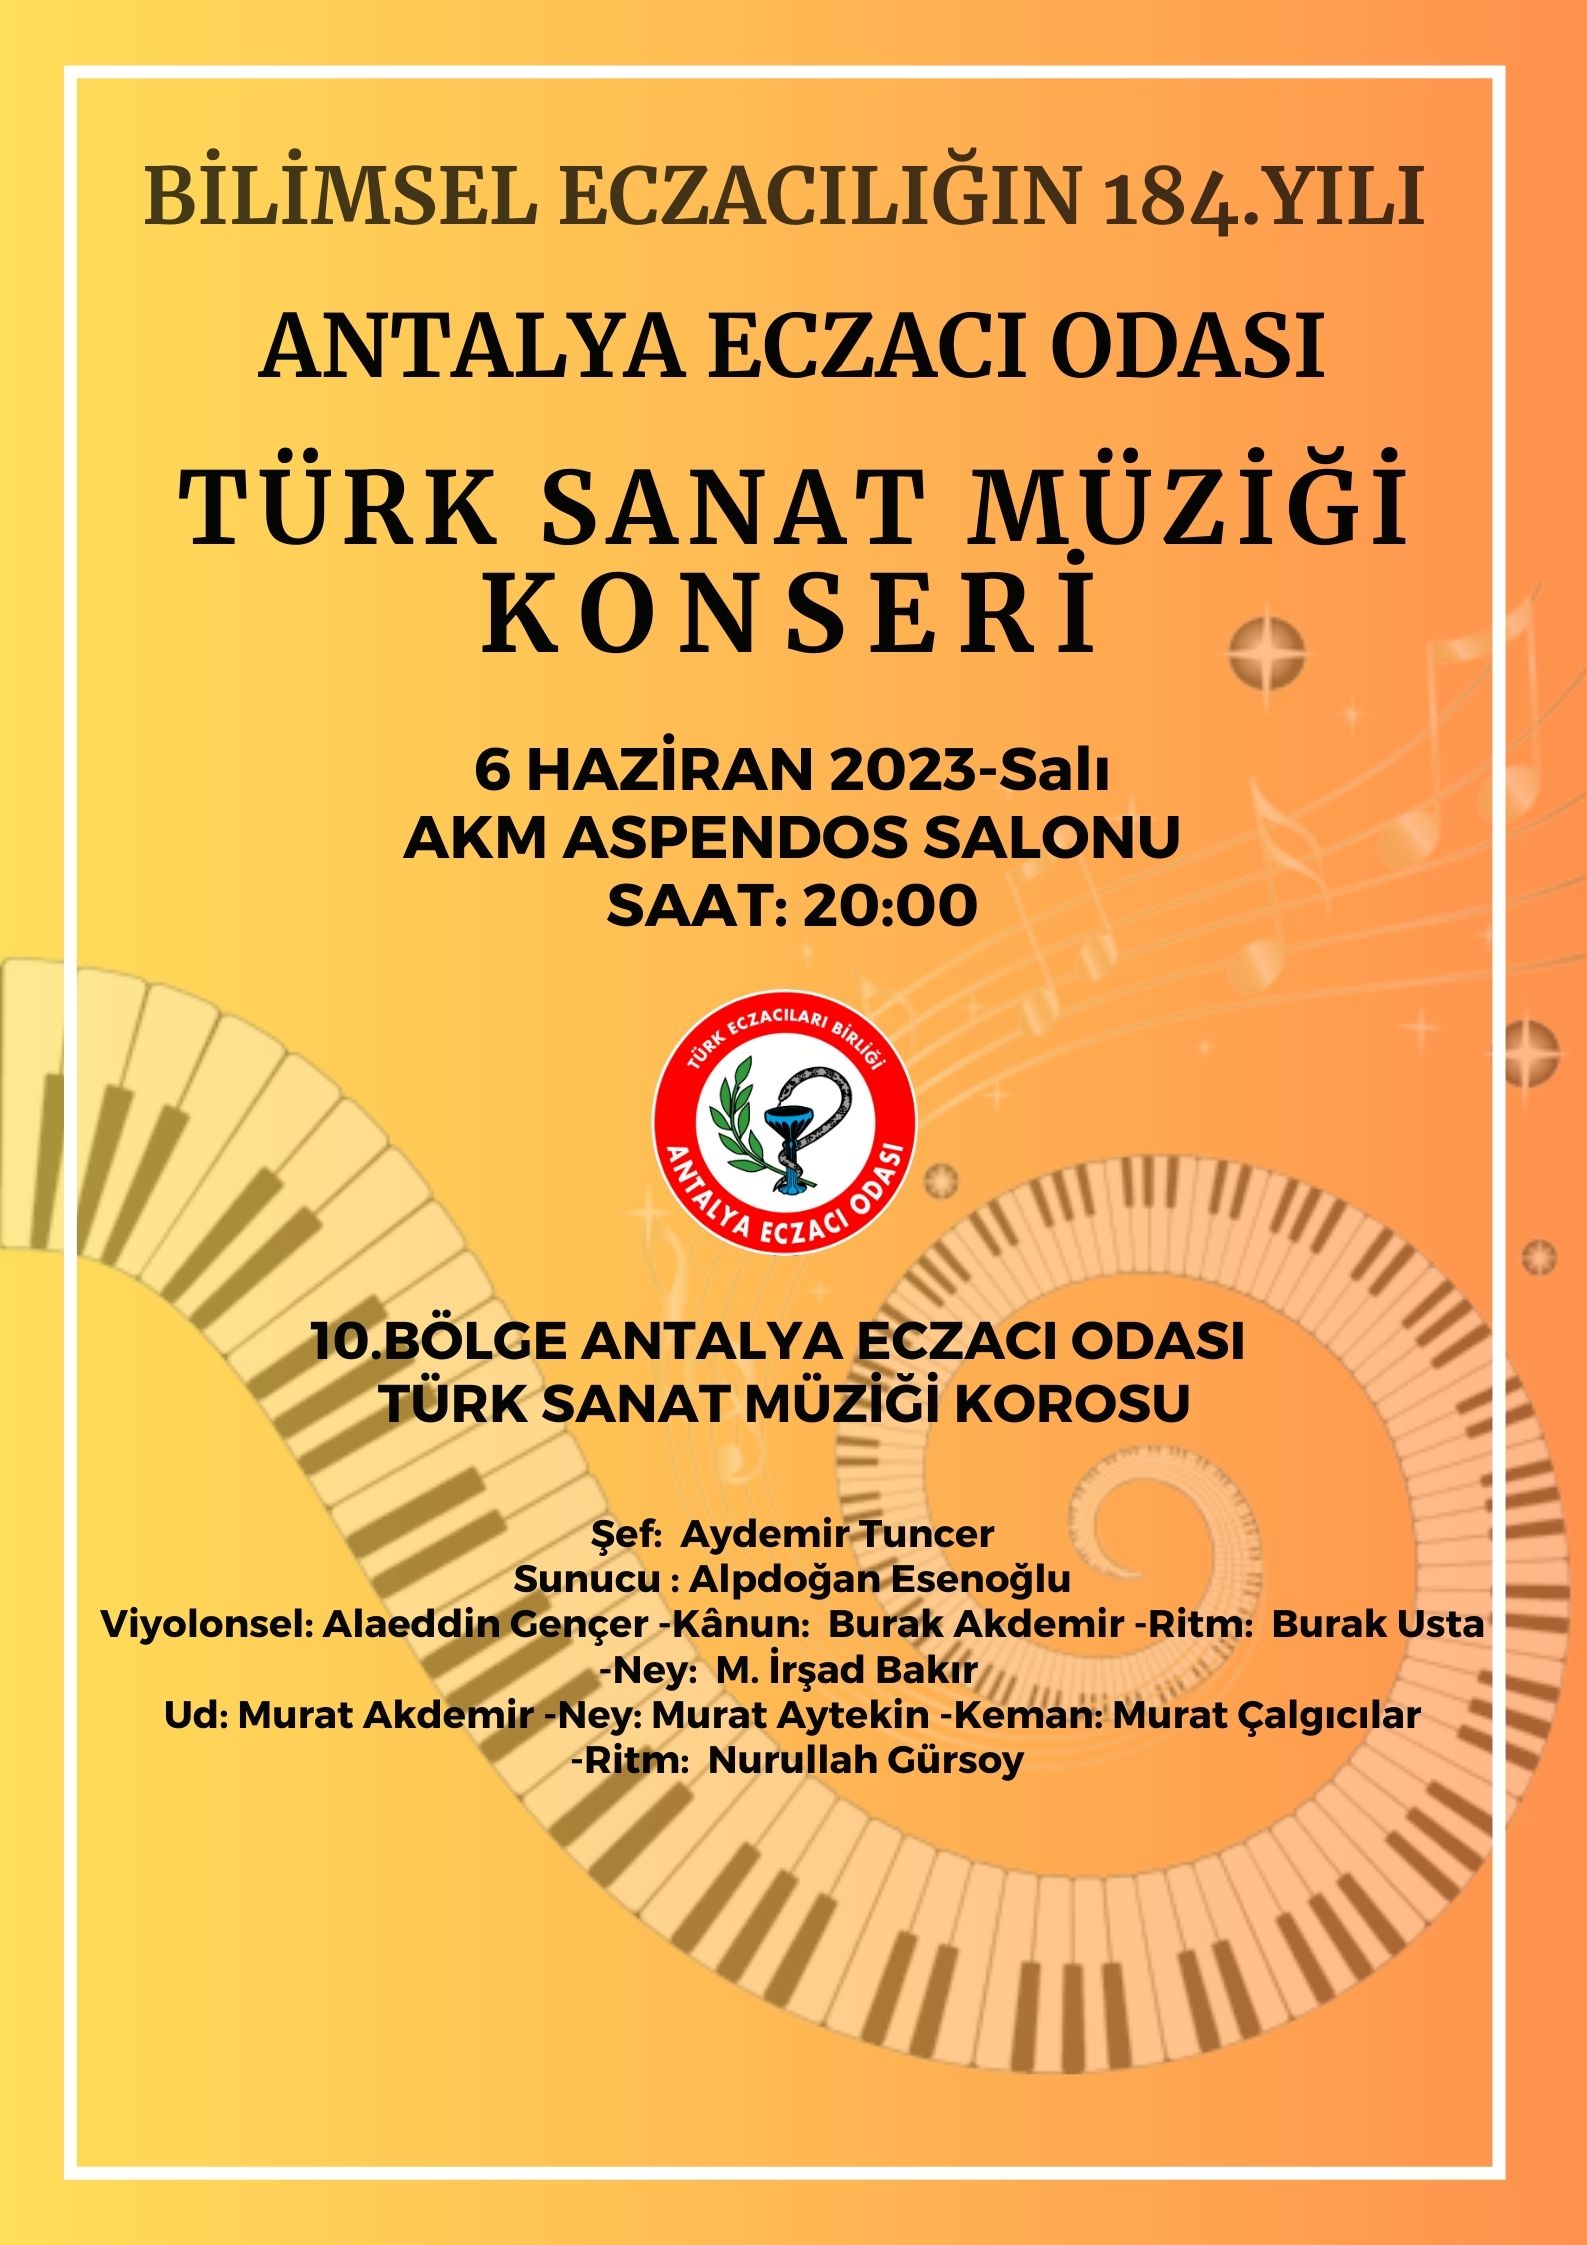 turk-sanat-muzigi-konseri-afis3.jpg